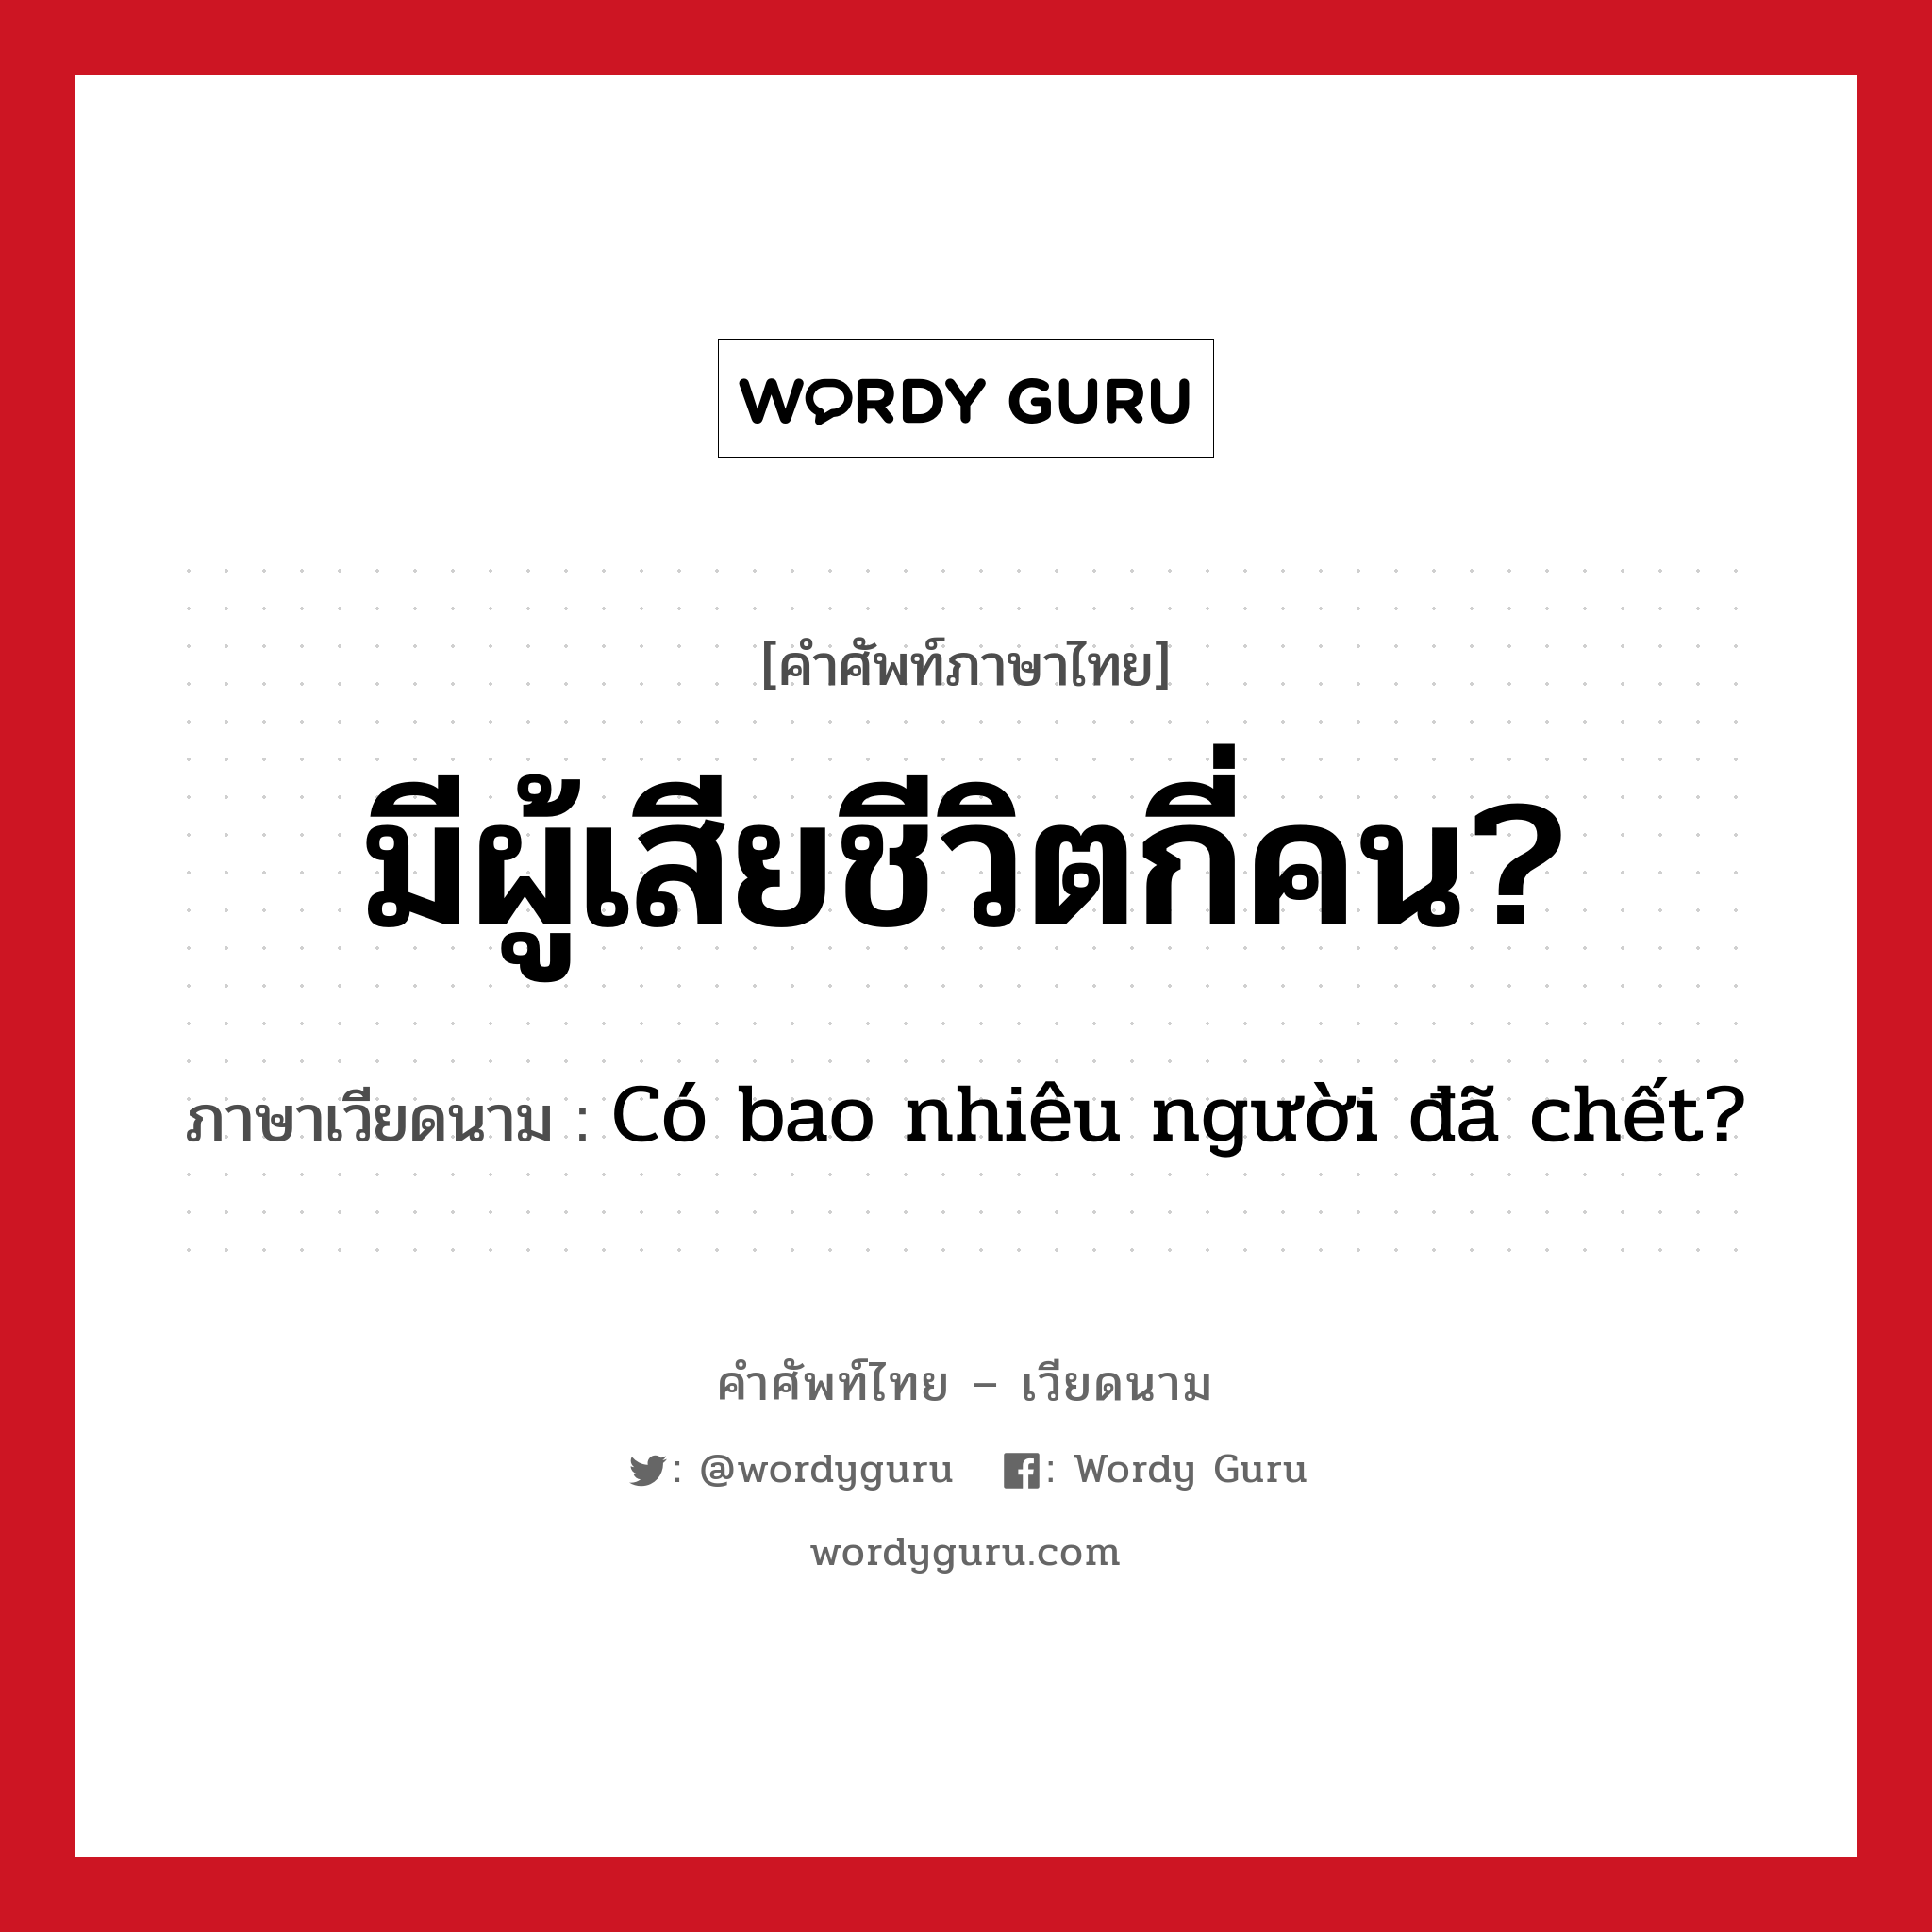 มีผู้เสียชีวิตกี่คน? ภาษาเวียดนามคืออะไร, คำศัพท์ภาษาไทย - เวียดนาม มีผู้เสียชีวิตกี่คน? ภาษาเวียดนาม Có bao nhiêu người đã chết? หมวด สภาพอากาศ หมวด สภาพอากาศ